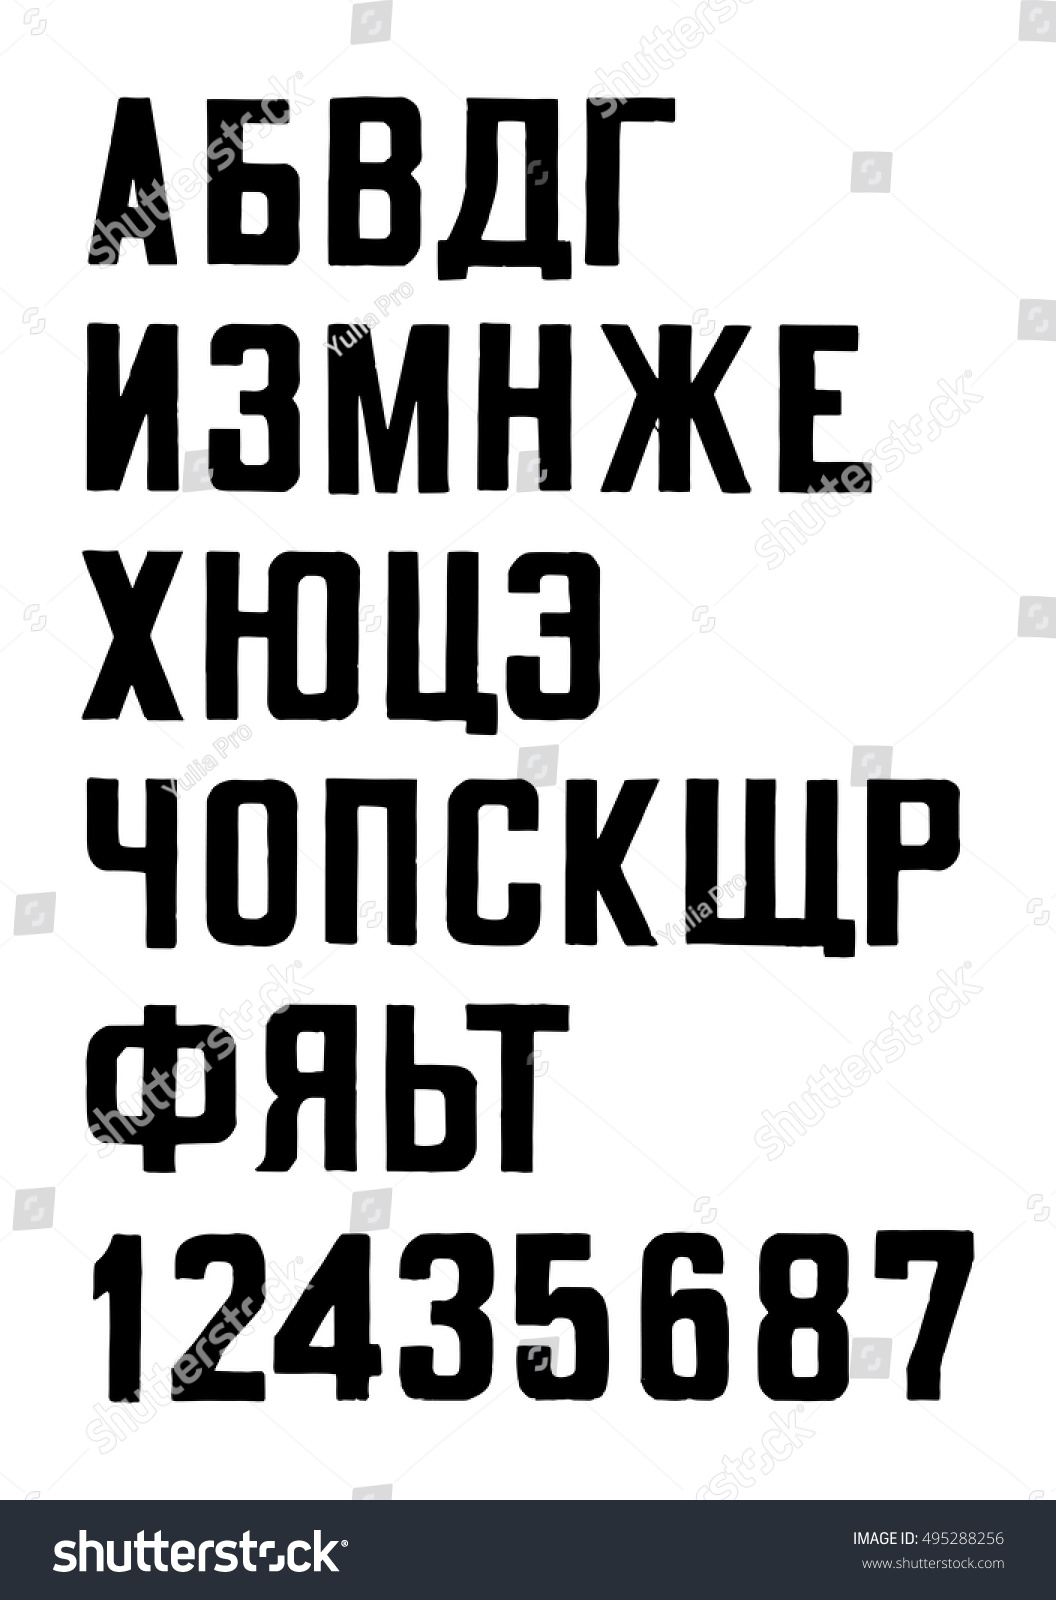 レトロな新聞スタイルの太字フォント キリル文字 白い背景に暗い印刷 のベクター画像素材 ロイヤリティフリー